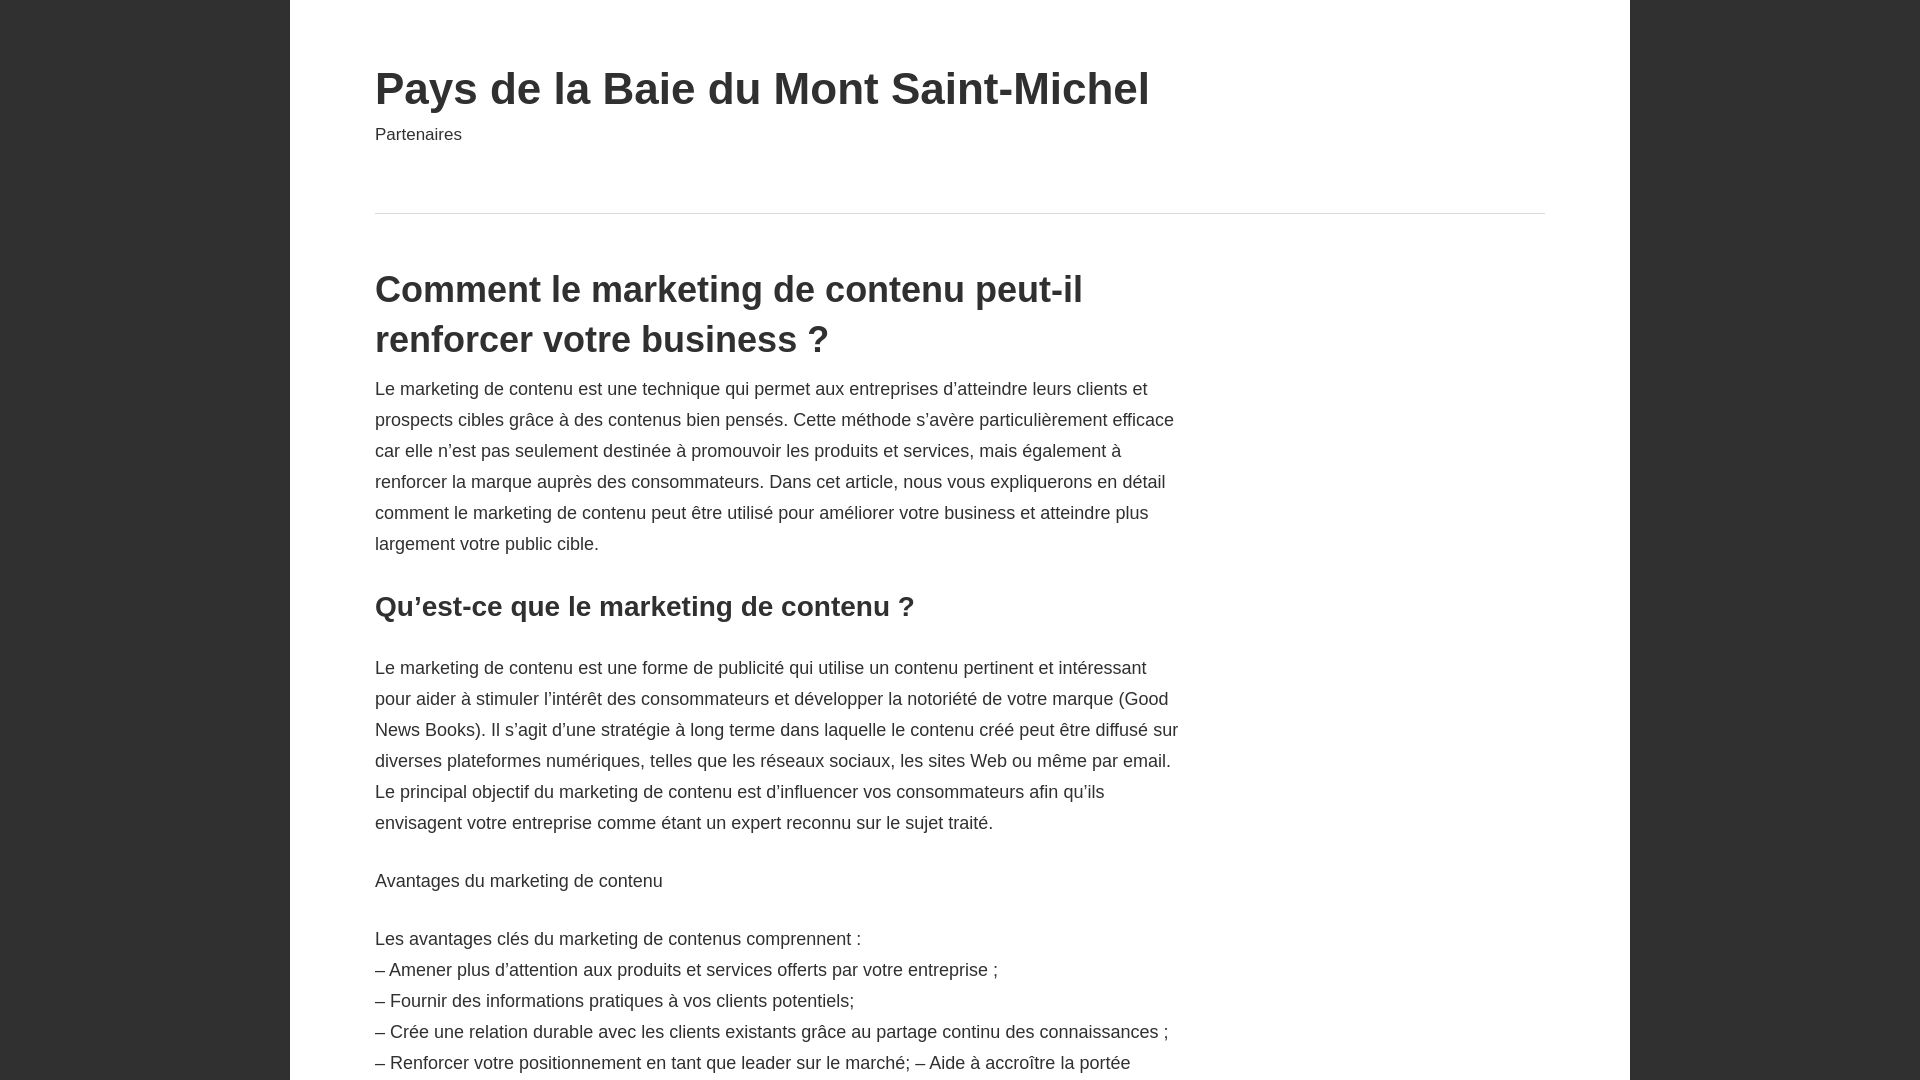 вебсайт pays-baie-mont-saint-michel.fr Є   ONLINE